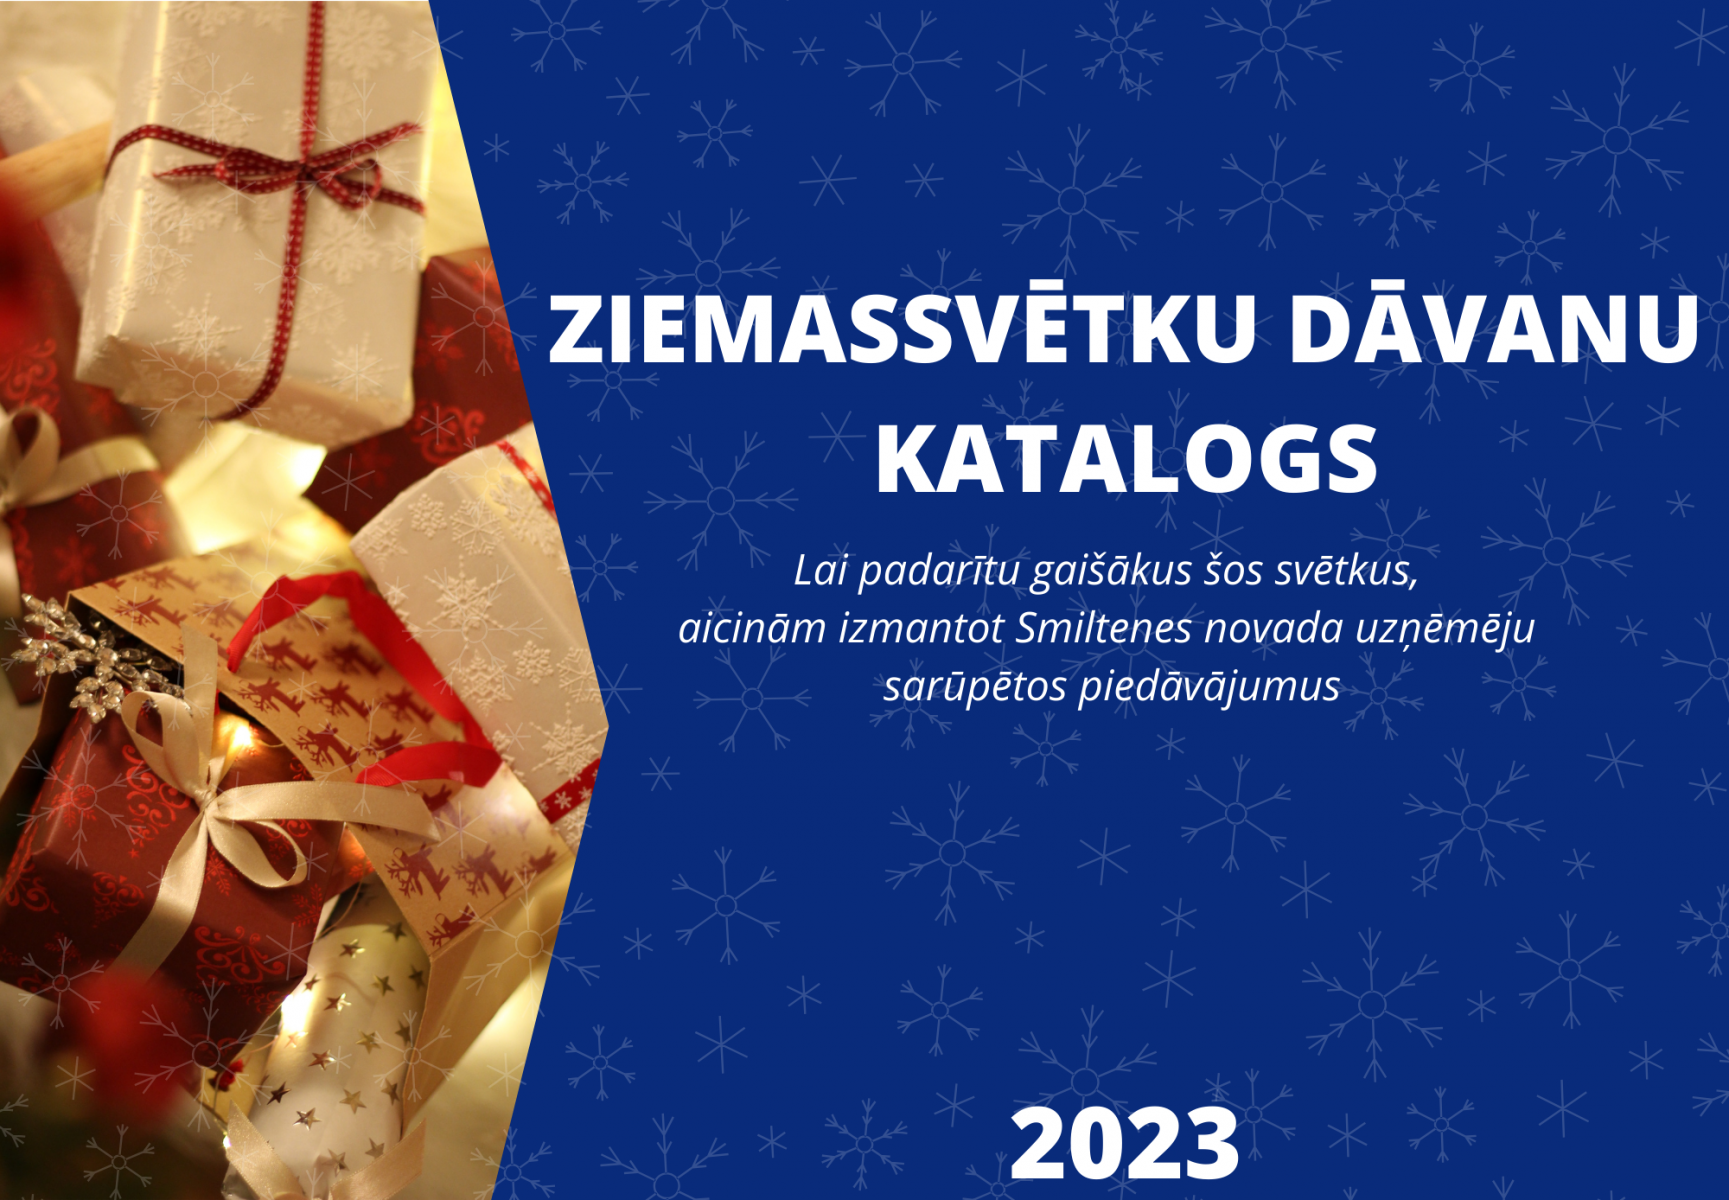 ZIEMASSVĒTKU DĀVANU KATALOGS 2023 - 1